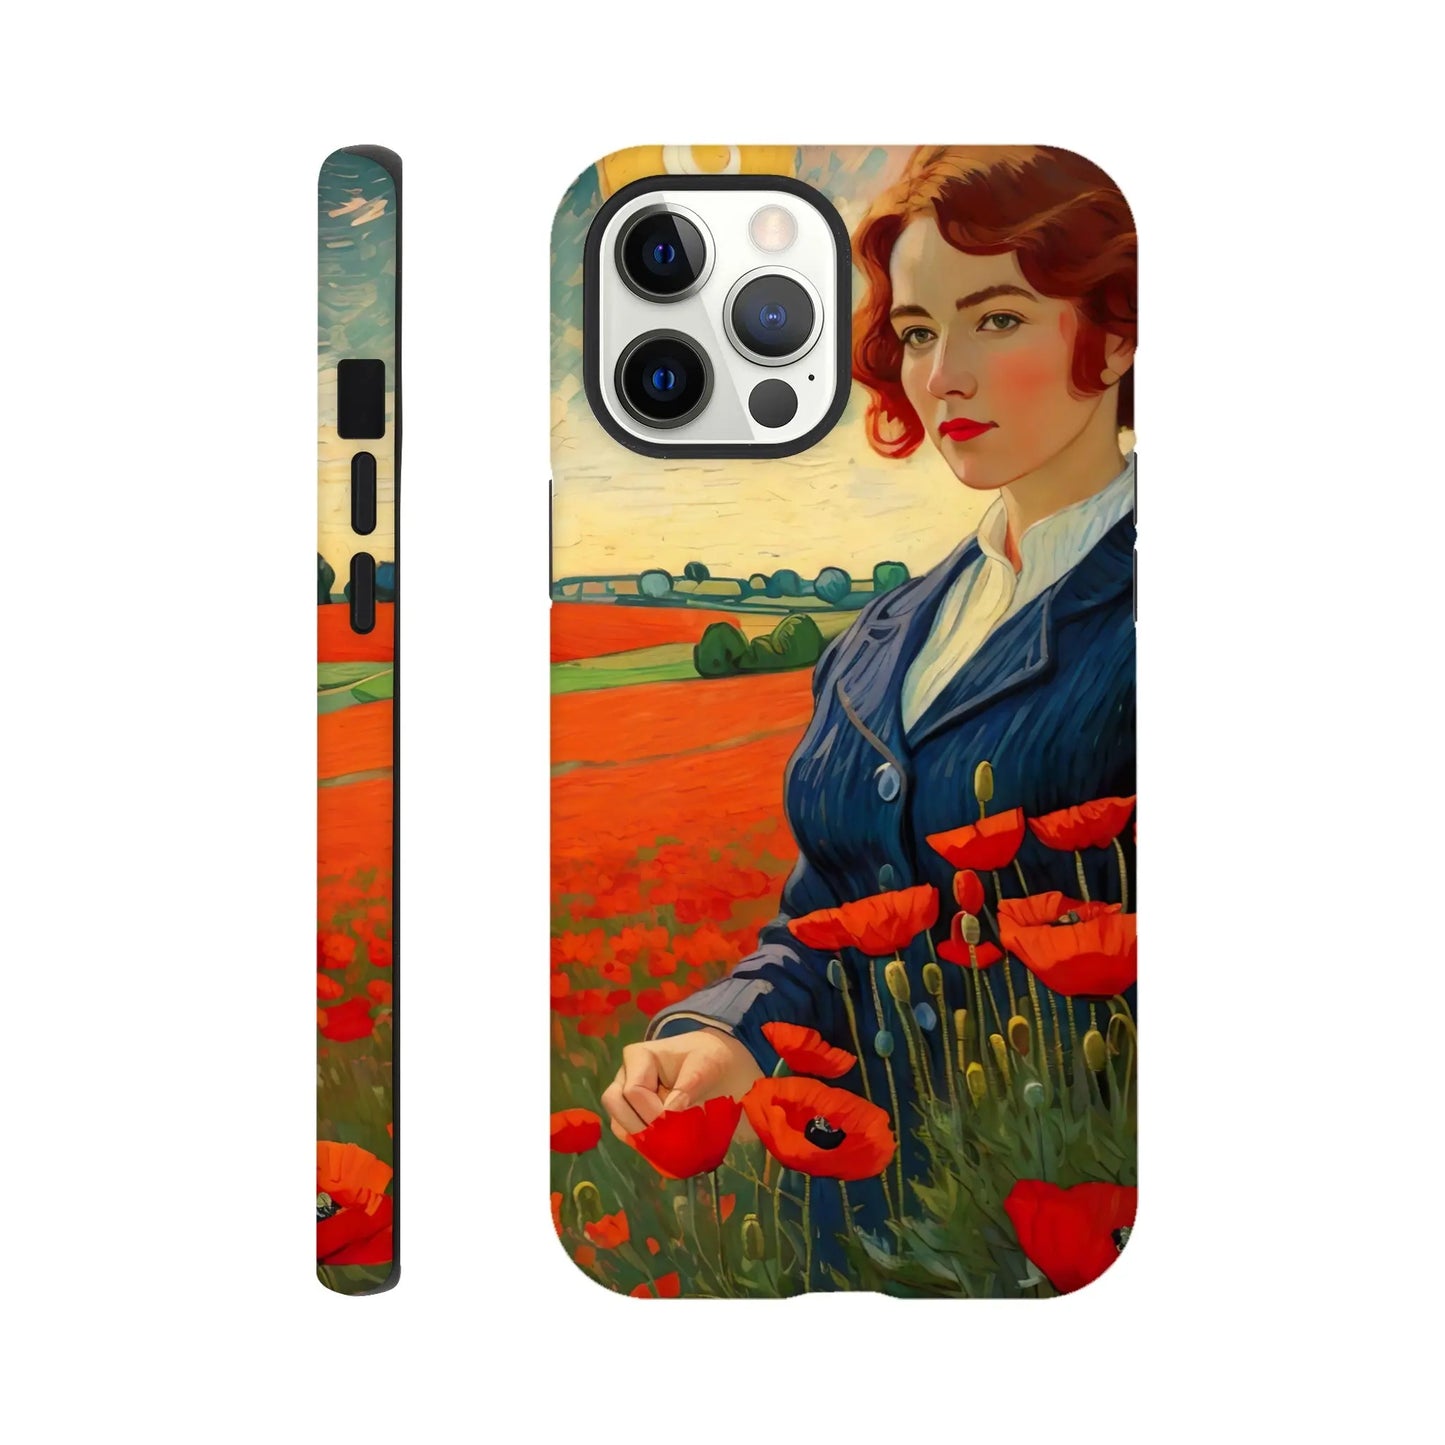 Smartphone-Hülle "Hart" - Blütezeit - Malerischer Stil, KI-Kunst RolConArt, Landschaften, iPhone-12-Pro-Max